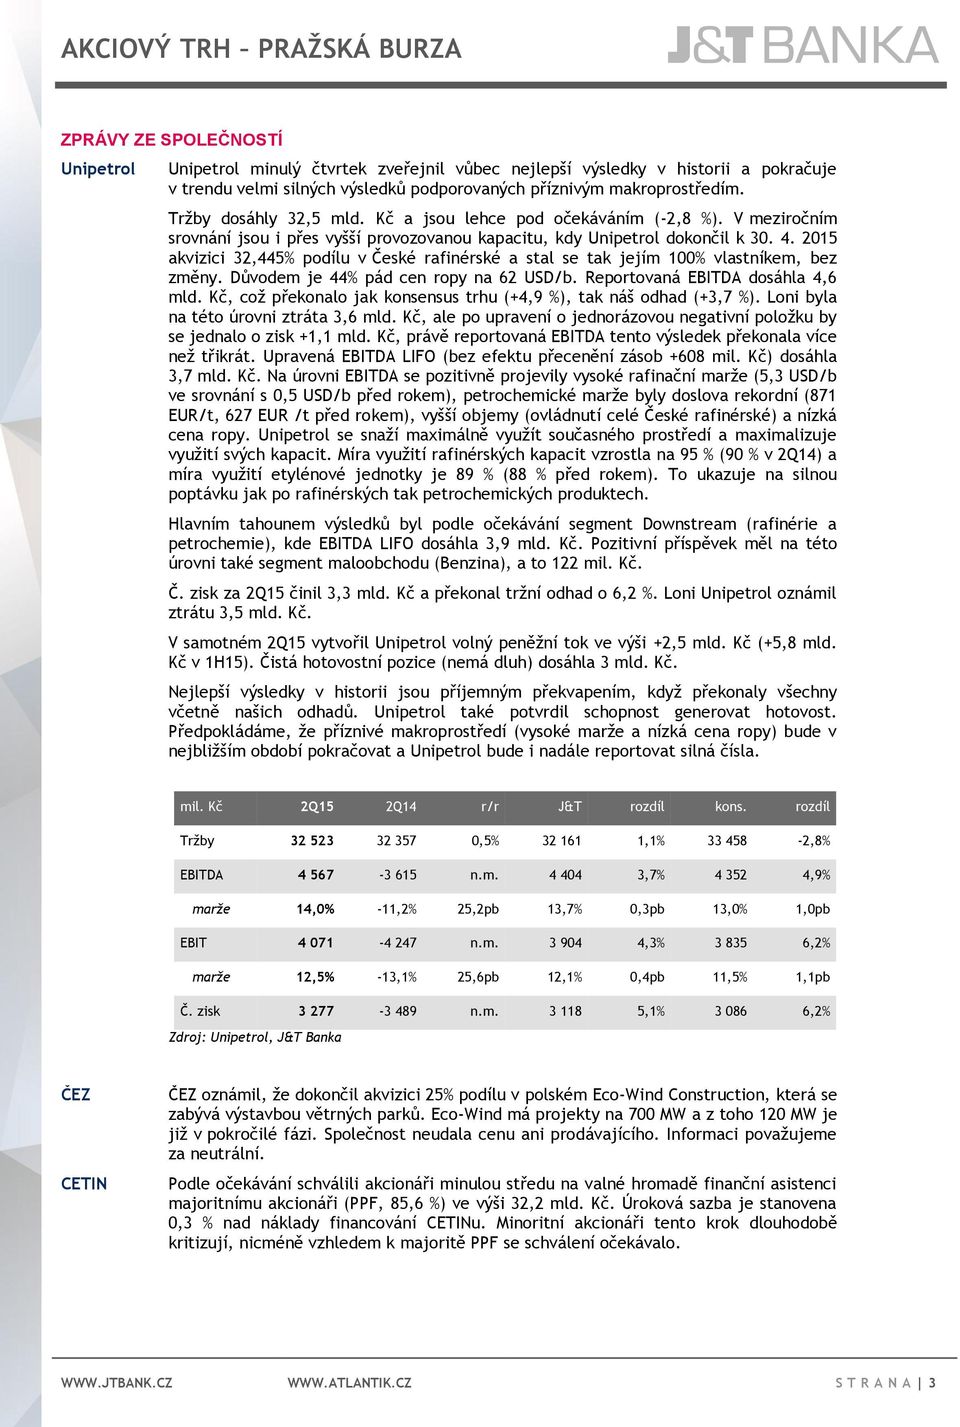 2015 akvizici 32,445% podílu v České rafinérské a stal se tak jejím 100% vlastníkem, bez změny. Důvodem je 44% pád cen ropy na 62 USD/b. Reportovaná EBITDA dosáhla 4,6 mld.